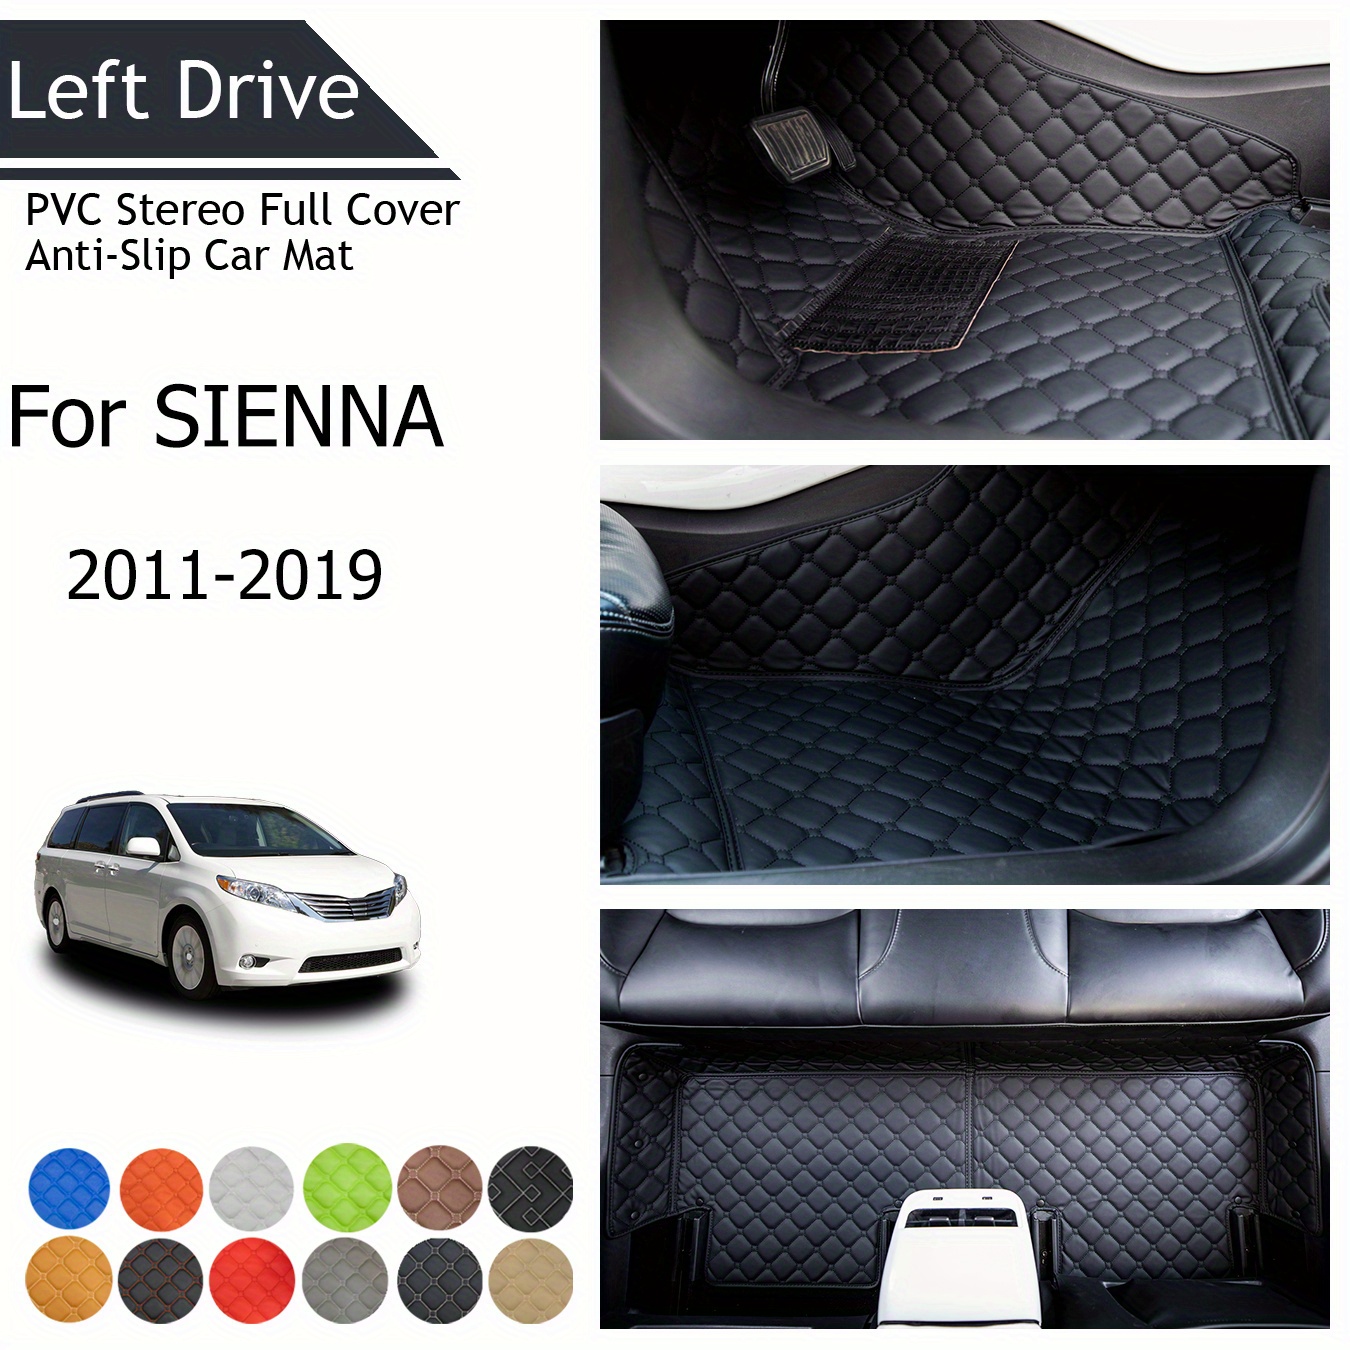 

Tegart [lhd] For Sienna 2011-2019 3 Layer Pvc Stereo Full Cover Anti-slip Car Mat